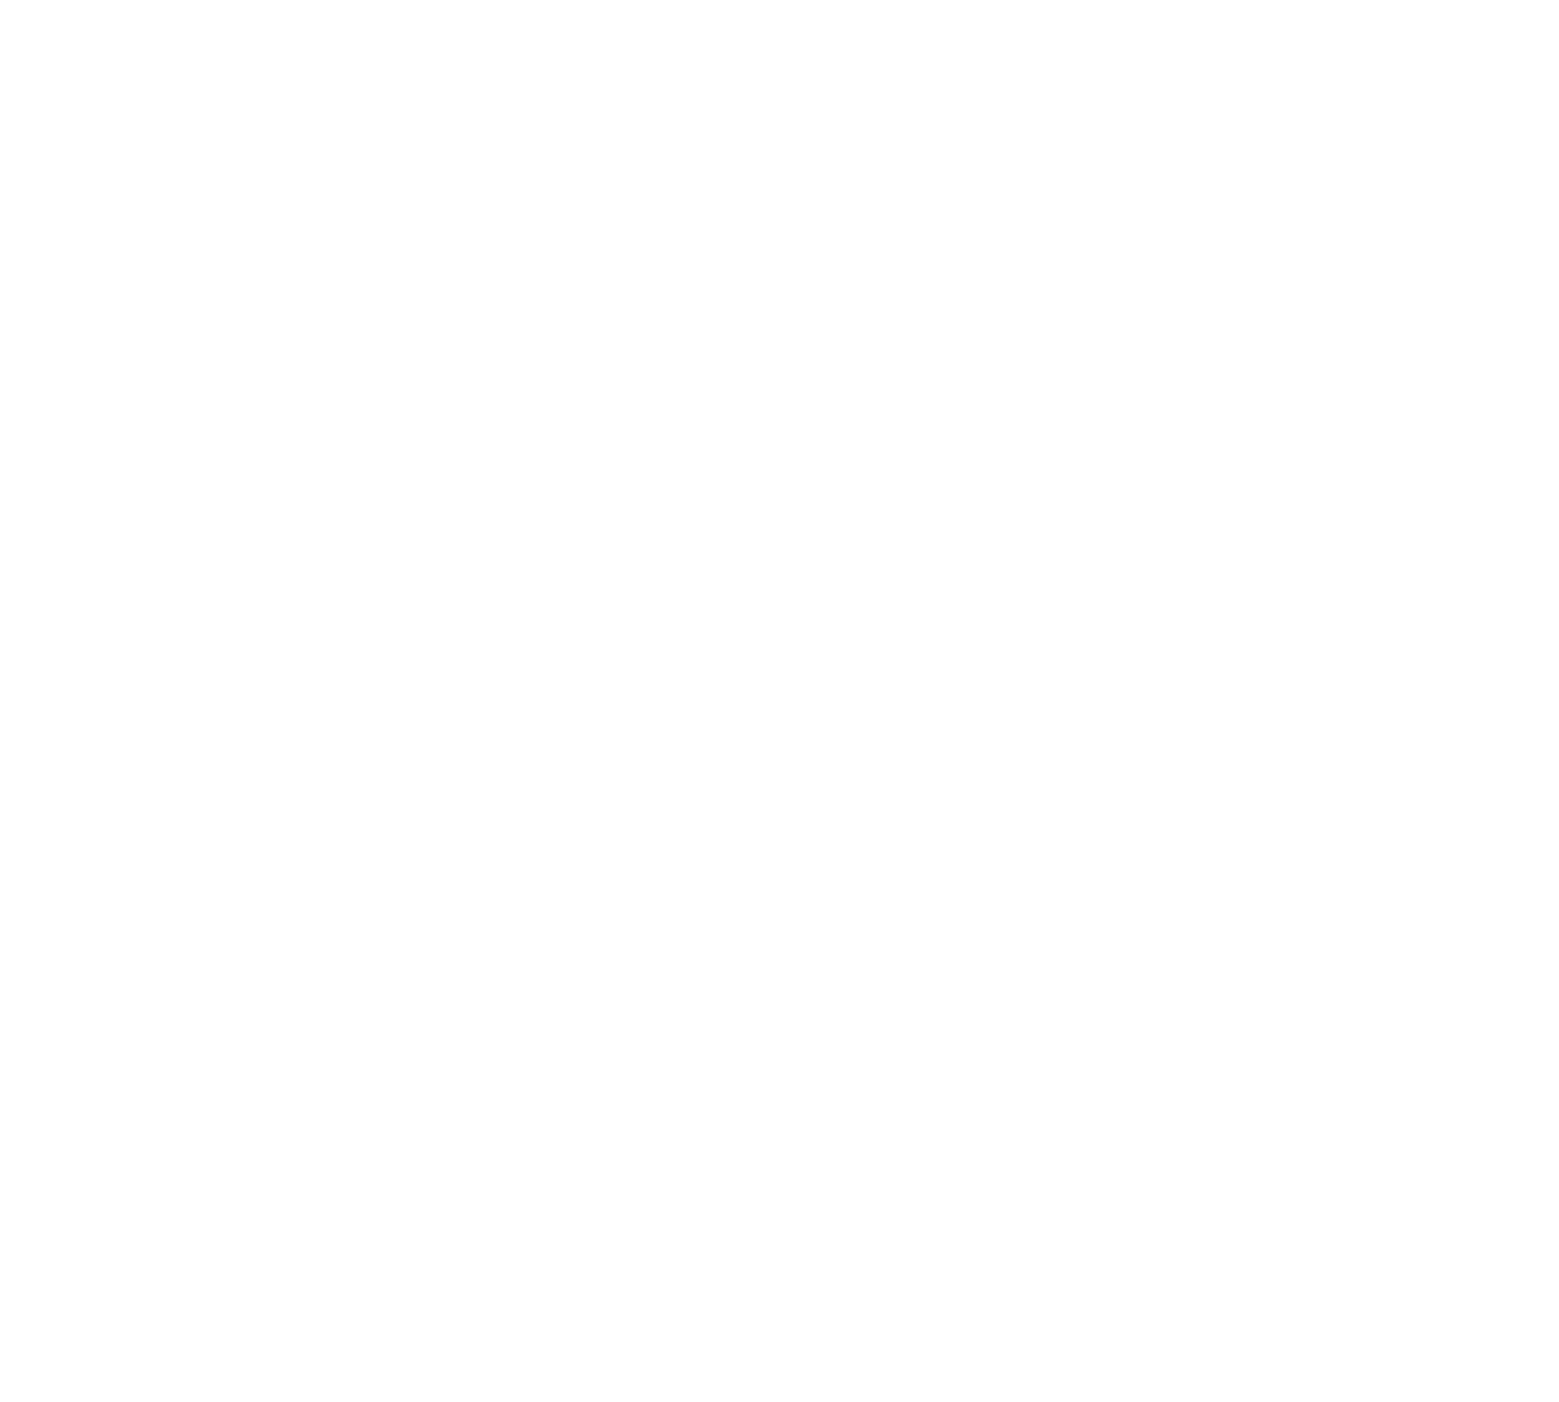 AngioDynamics logo pour fonds sombres (PNG transparent)